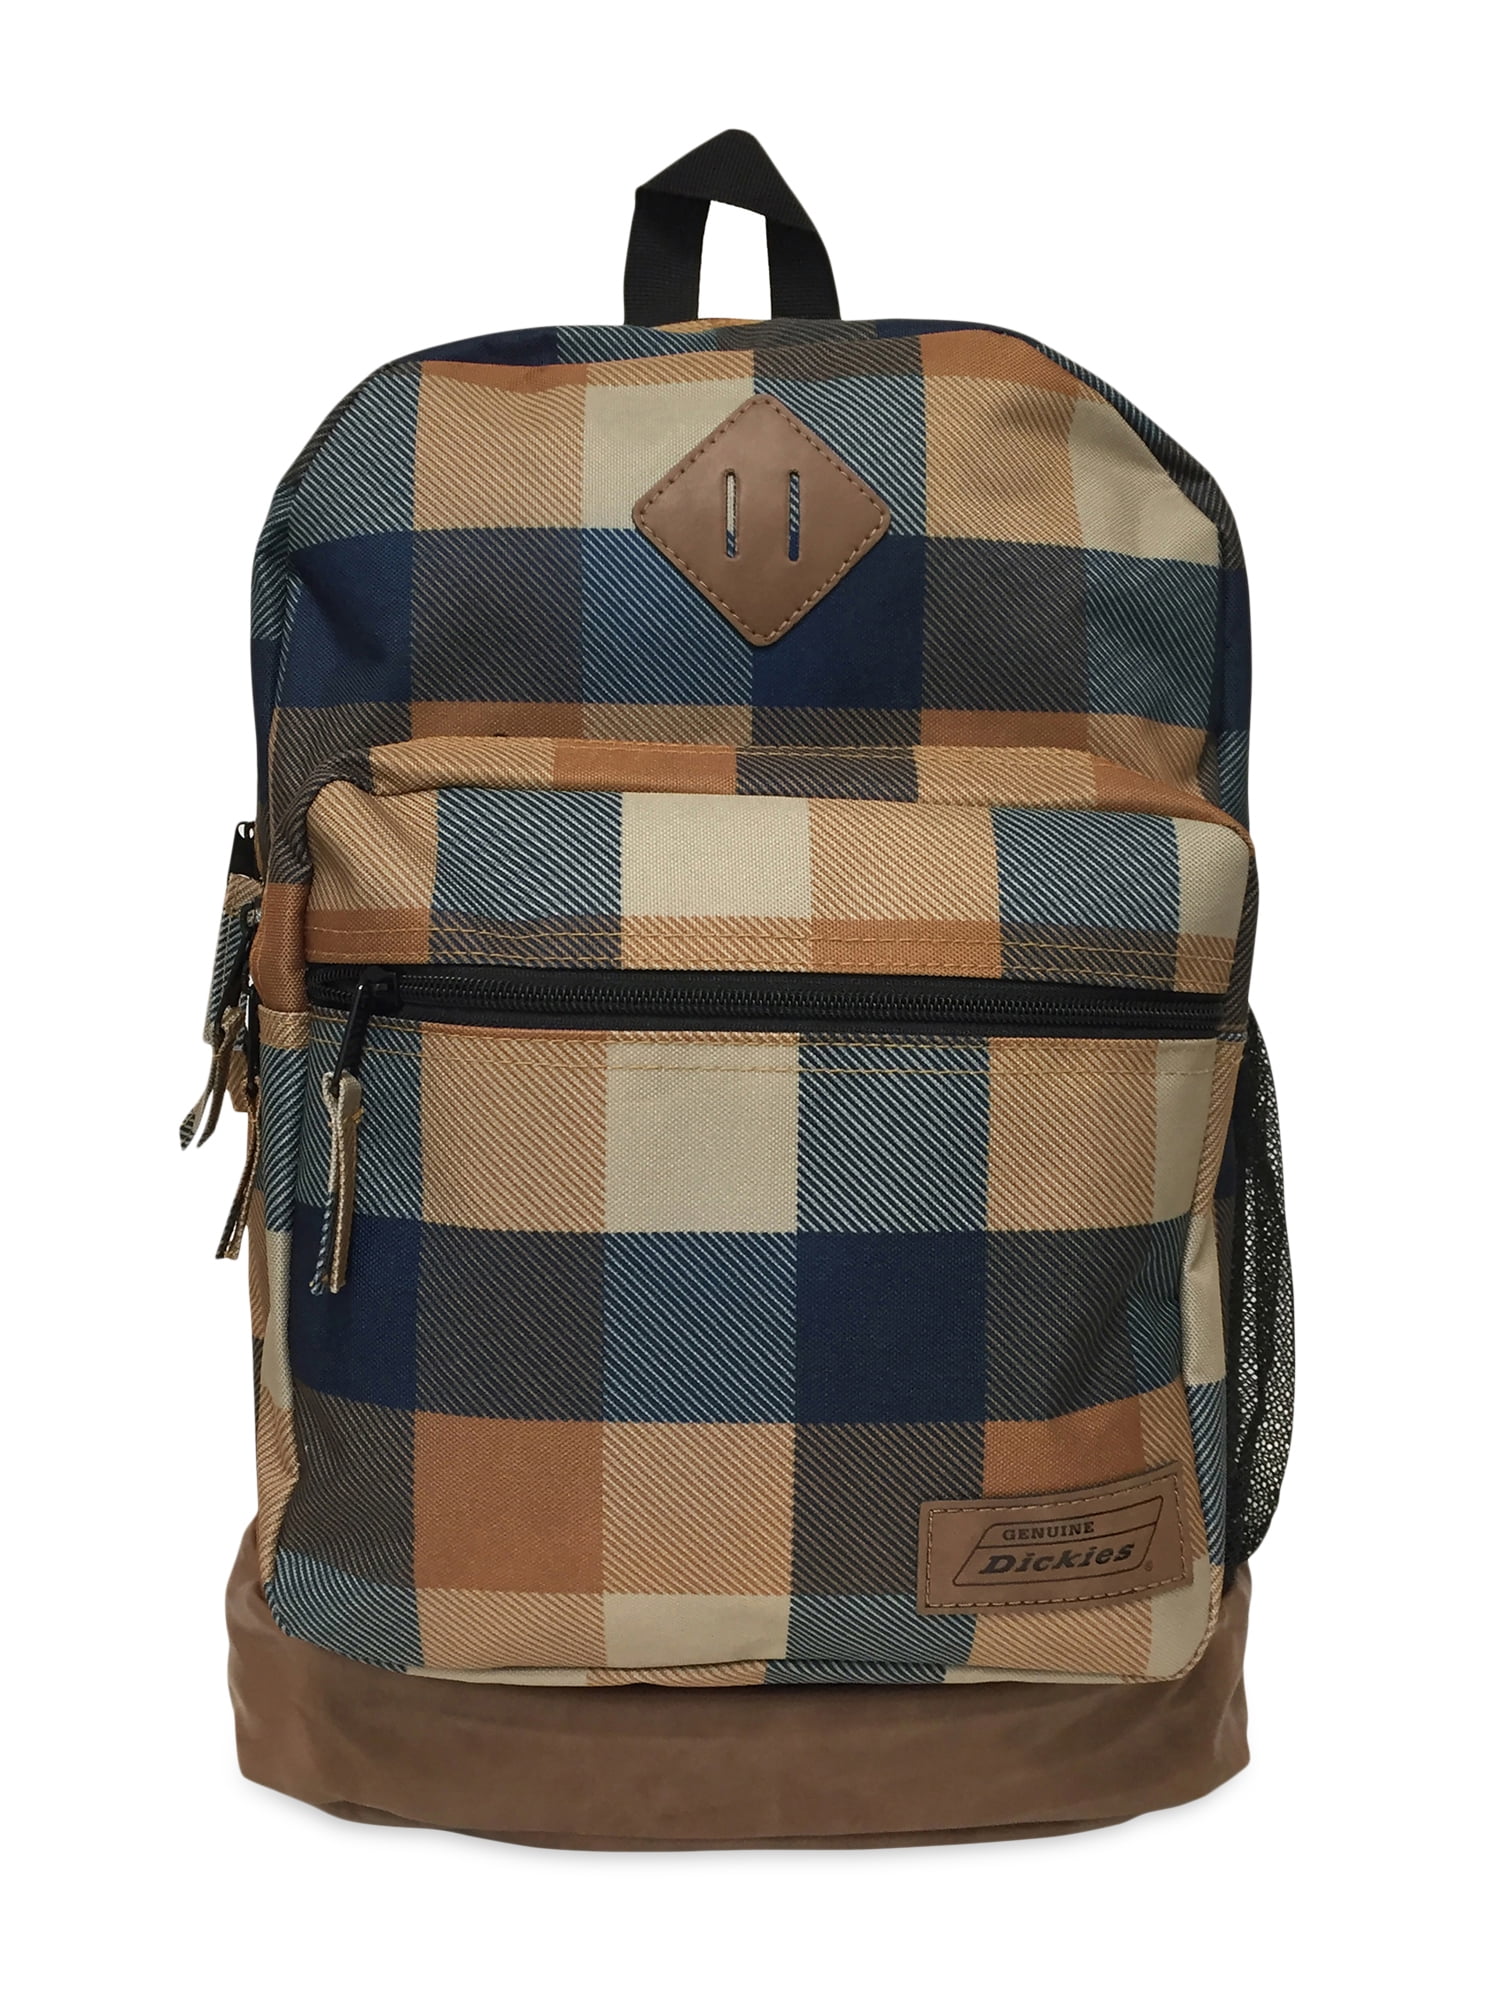 Genuine Dickies Unisex Varsity Backpack Brown Plaid - Walmart.com